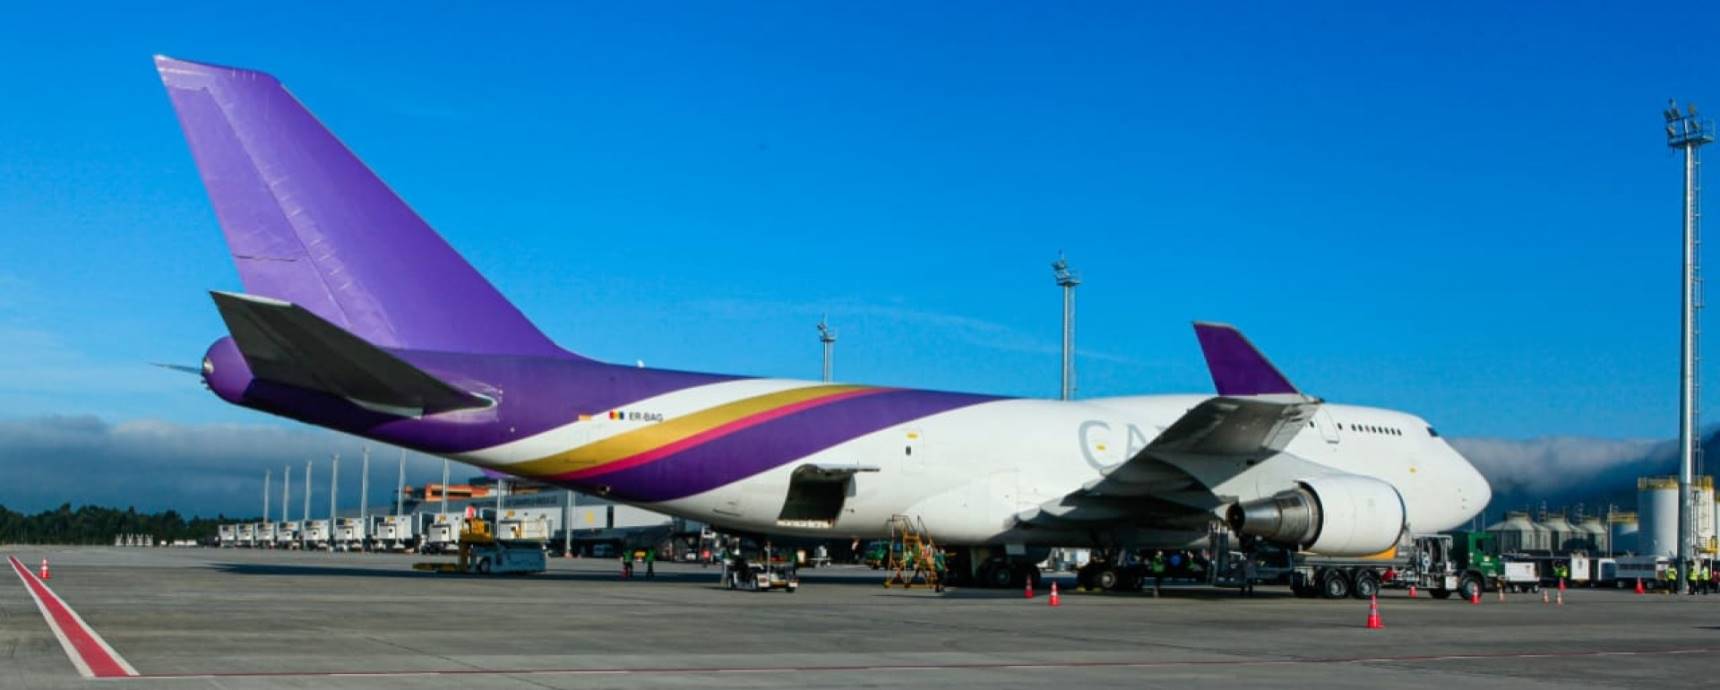 El Aeropuerto Internacional de Florianópolis recibe un avión de carga Boeing 747-400F por primera vez en su historia